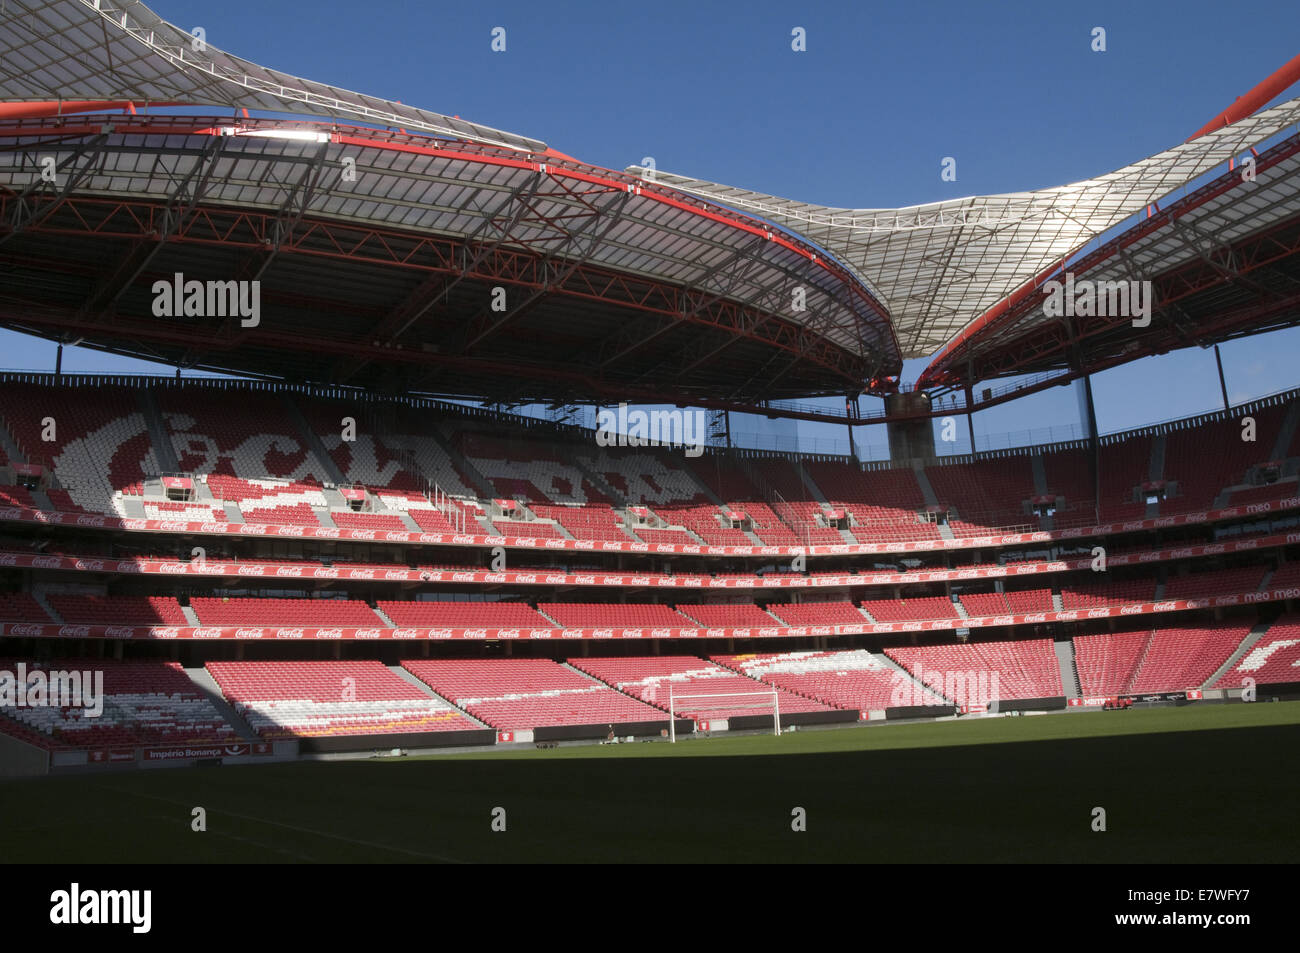 Benfica-Stadion, benannt Estádio da Luz (Stadion des Lichts), in Lissabon Stockfoto